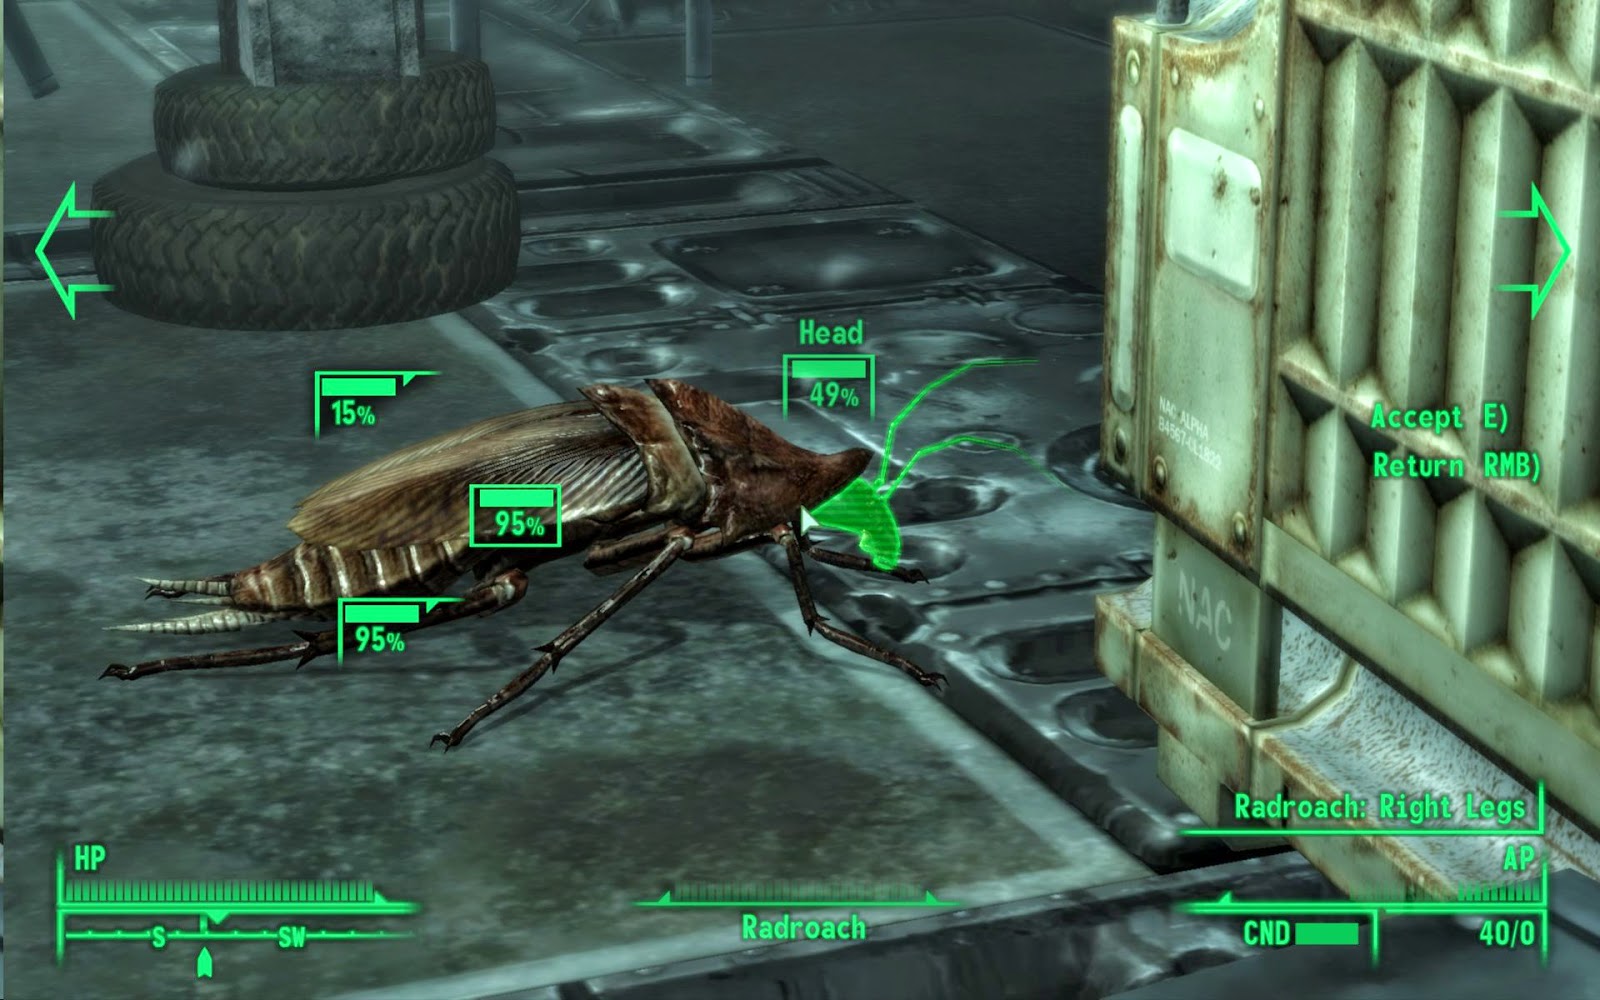 Fallout 3 ao melhor preço